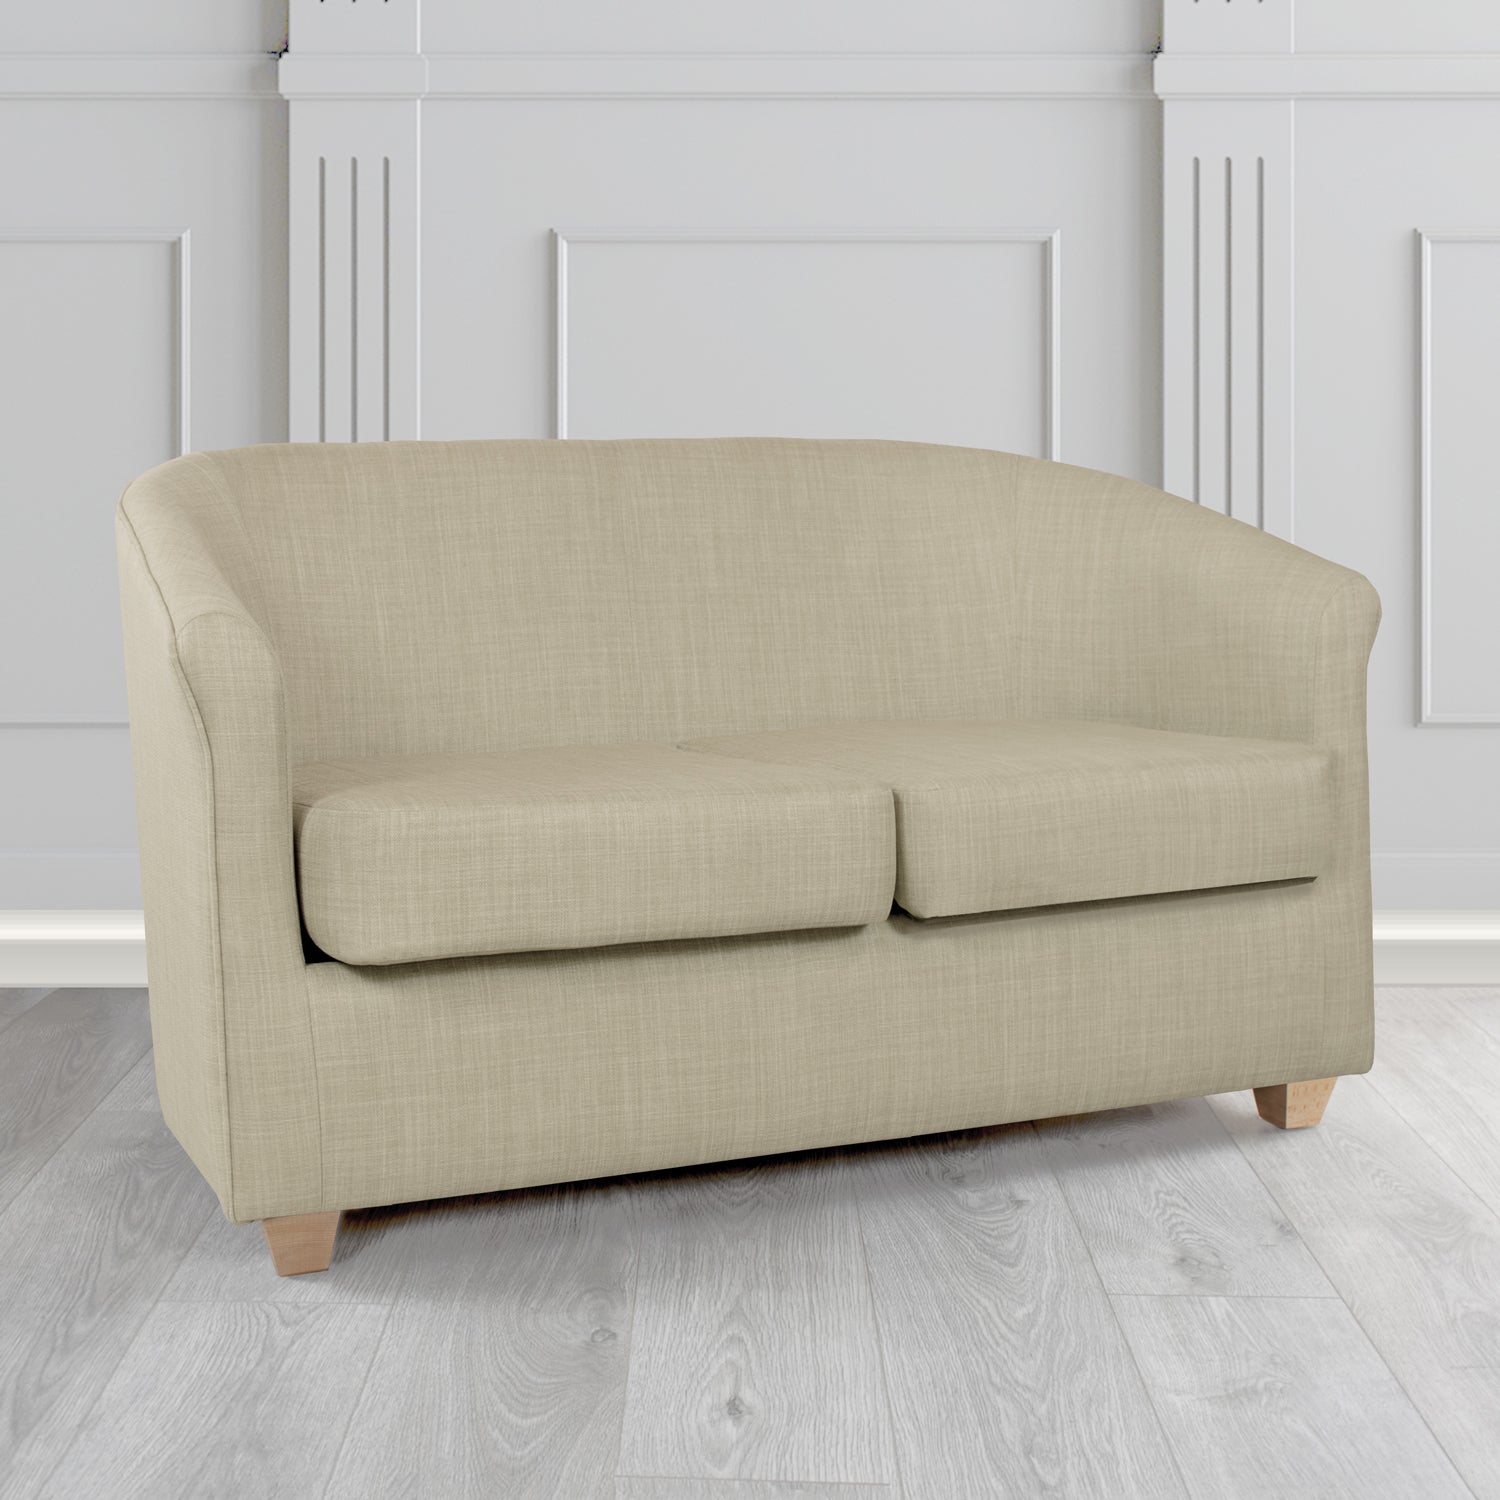 Cannes Charles Fudge Linen Fabric 2 Seater Tub Sofa - The Tub Chair Shop